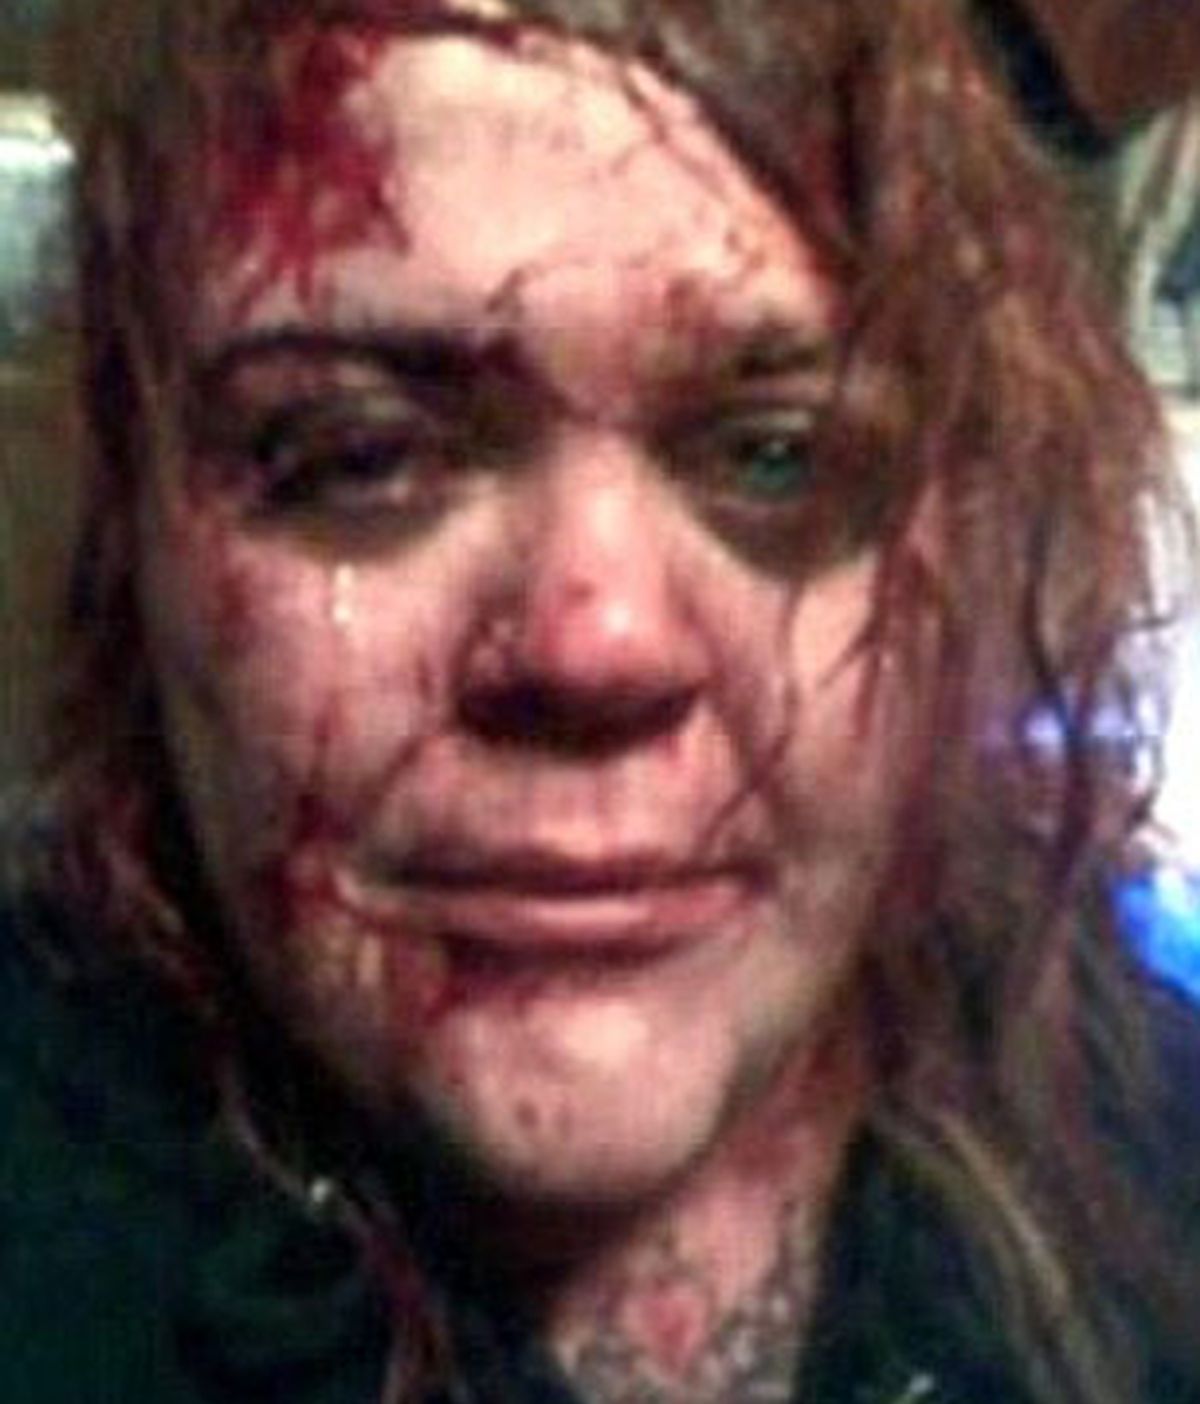 Una mujer cuelga un impactante 'selfie' en Facebook para buscar ayuda tras un ataque